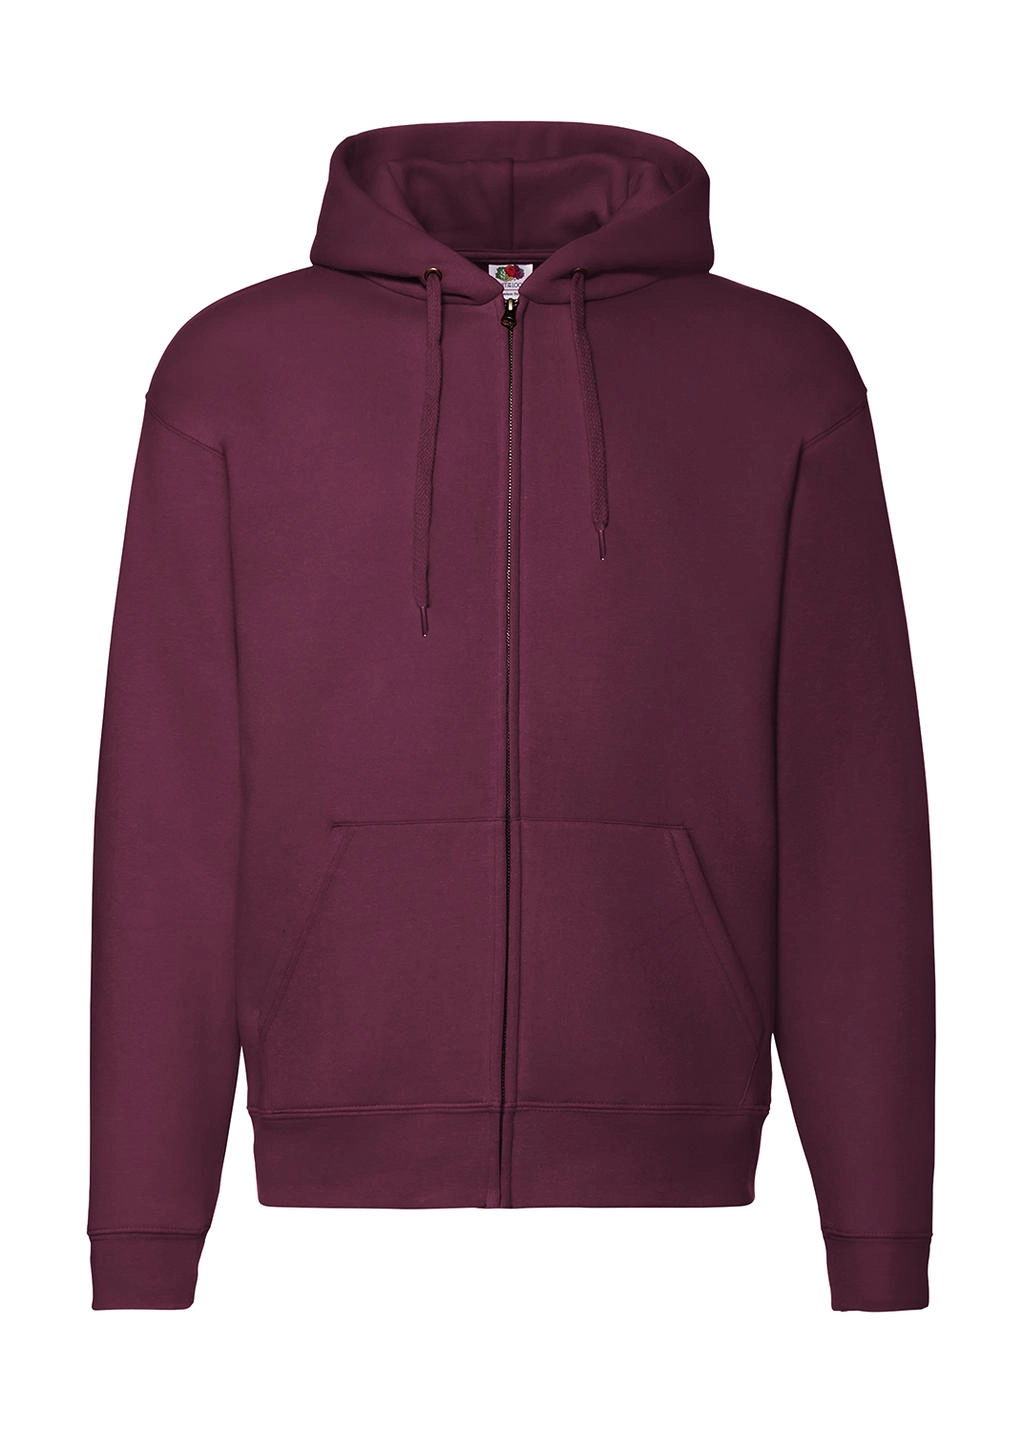 Premium Hooded Zip Sweat zum Besticken und Bedrucken in der Farbe Burgundy mit Ihren Logo, Schriftzug oder Motiv.